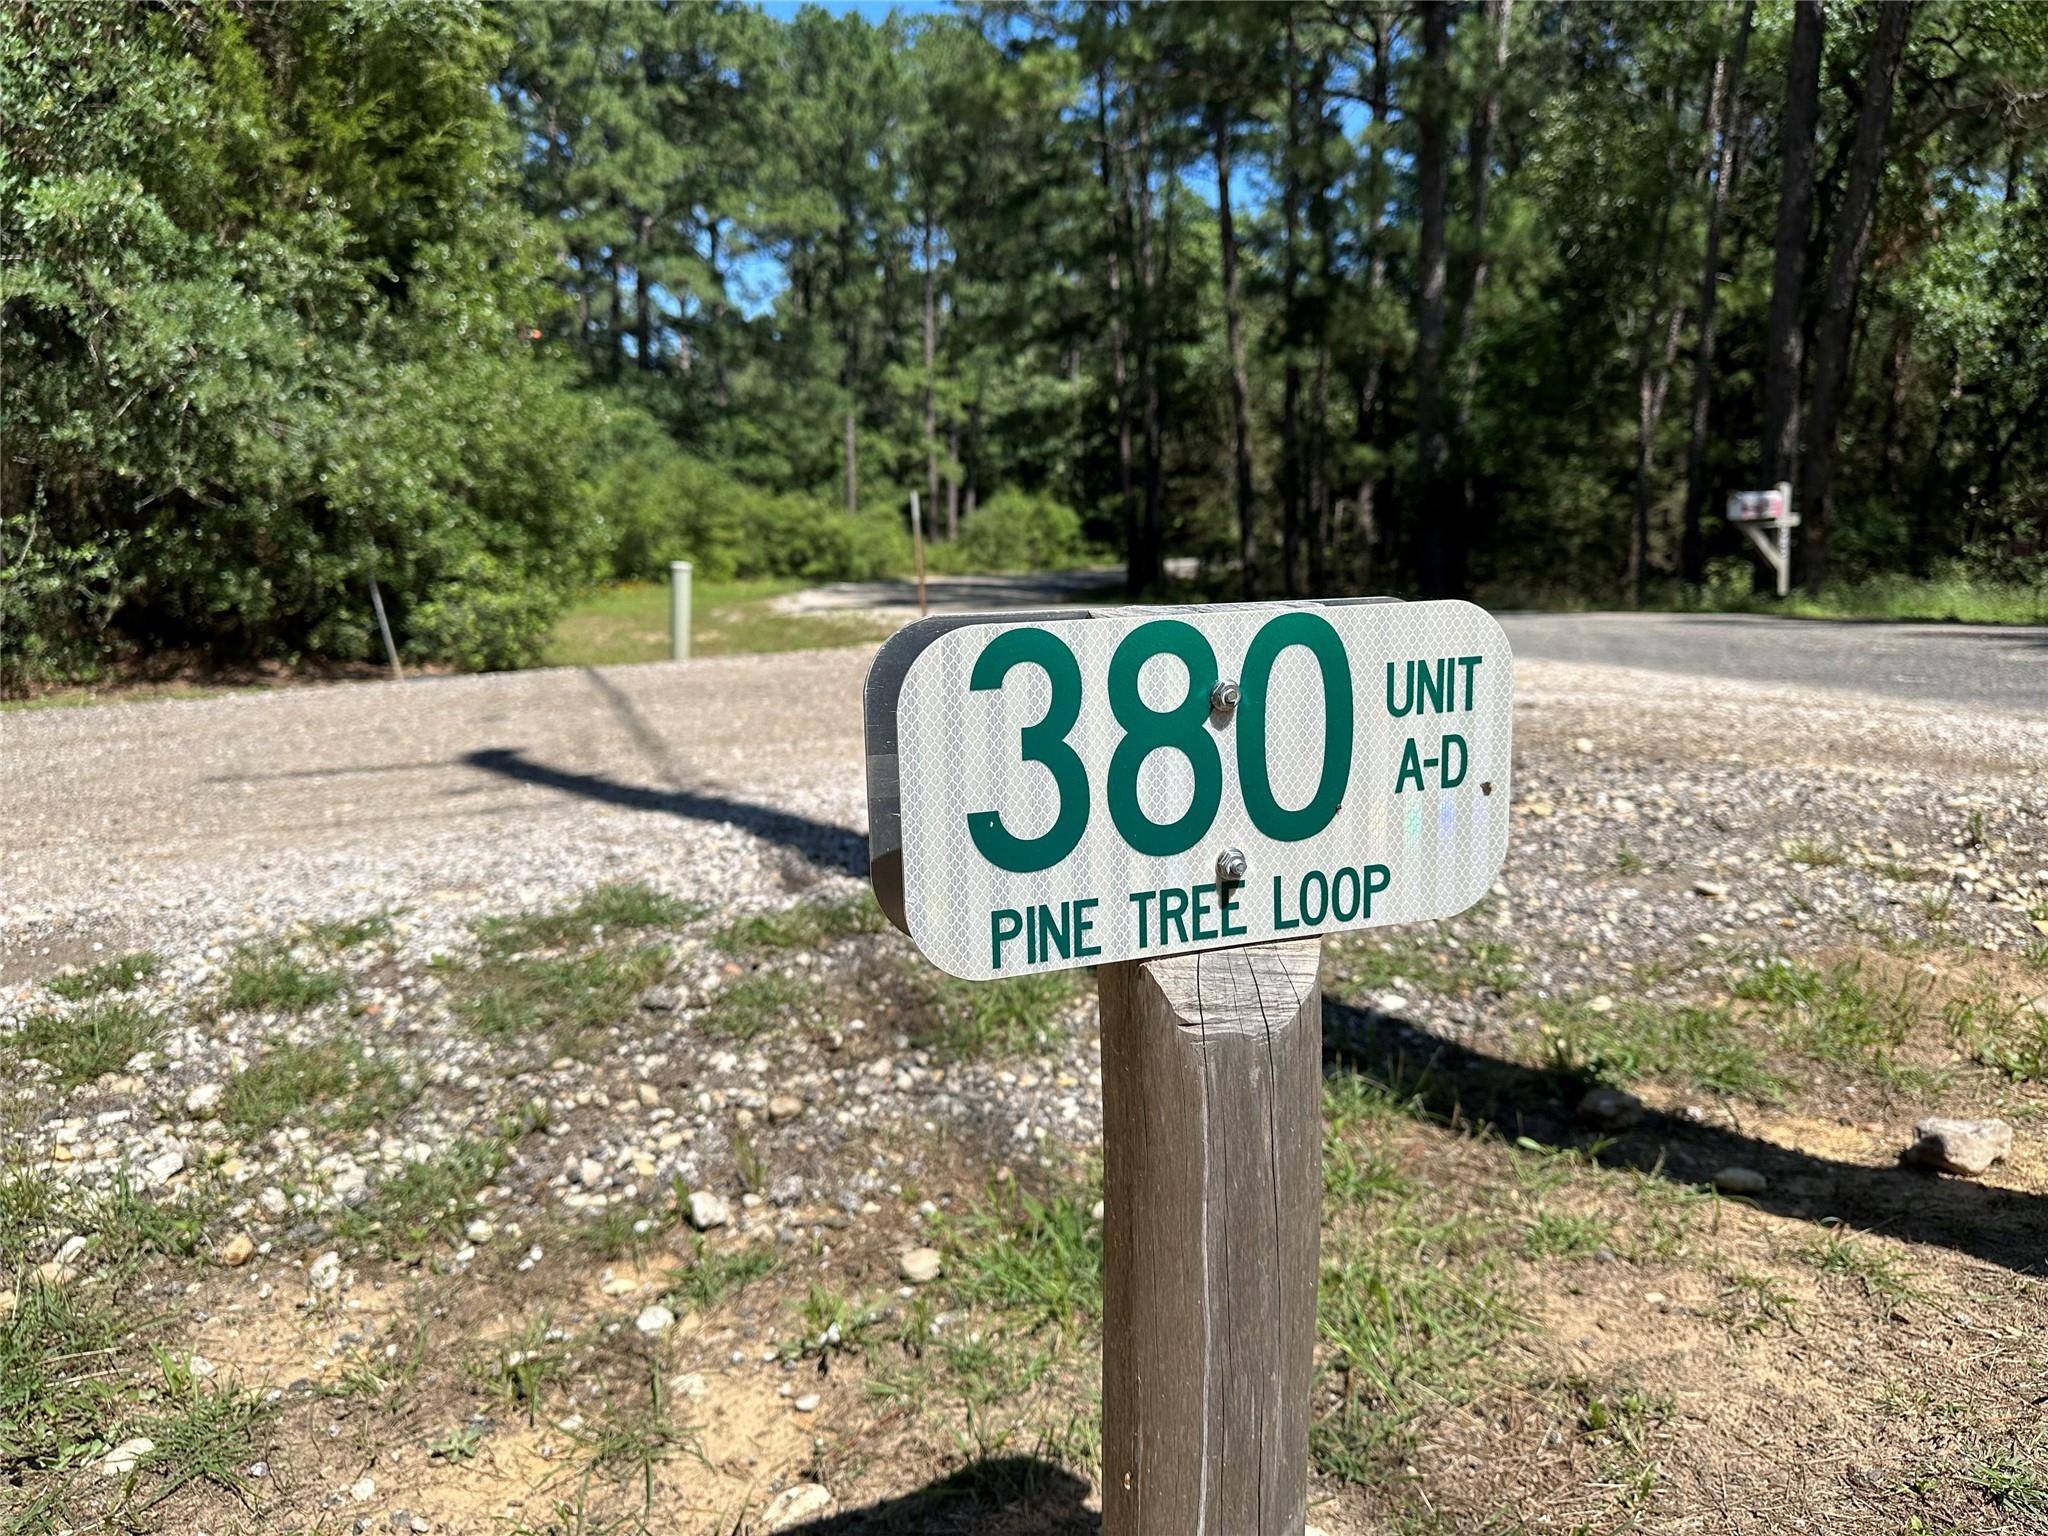 2. 380 Pine Tree Loop